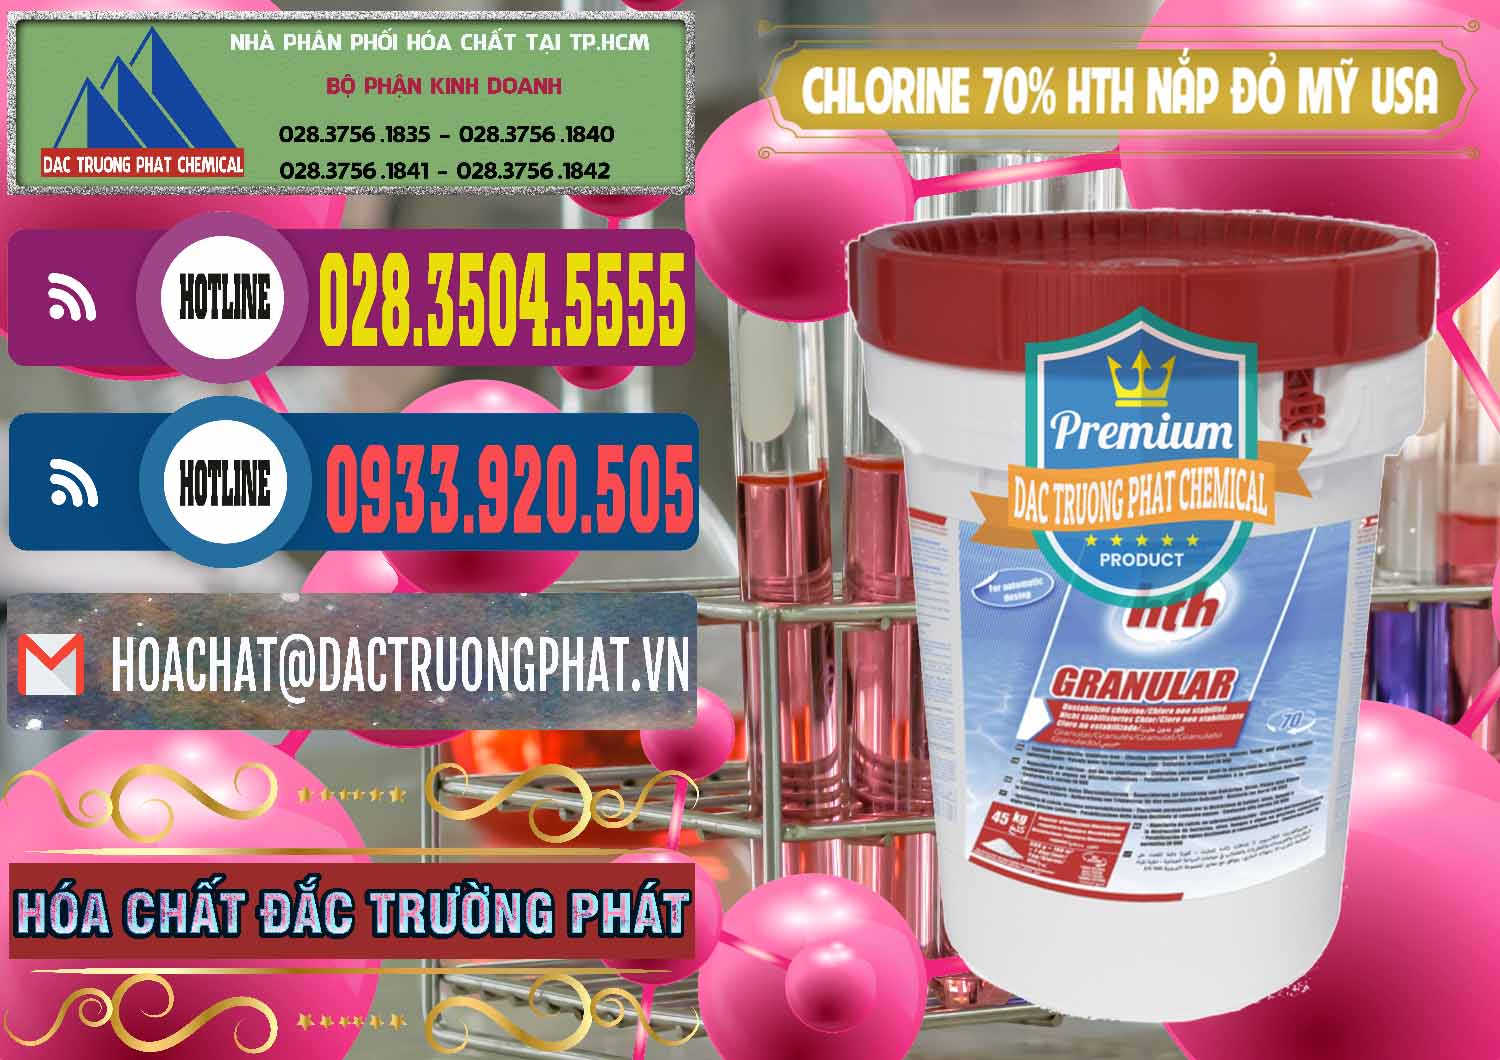 Cty bán & cung cấp Clorin – Chlorine 70% HTH Nắp Đỏ Mỹ Usa - 0244 - Công ty cung cấp và phân phối hóa chất tại TP.HCM - muabanhoachat.com.vn